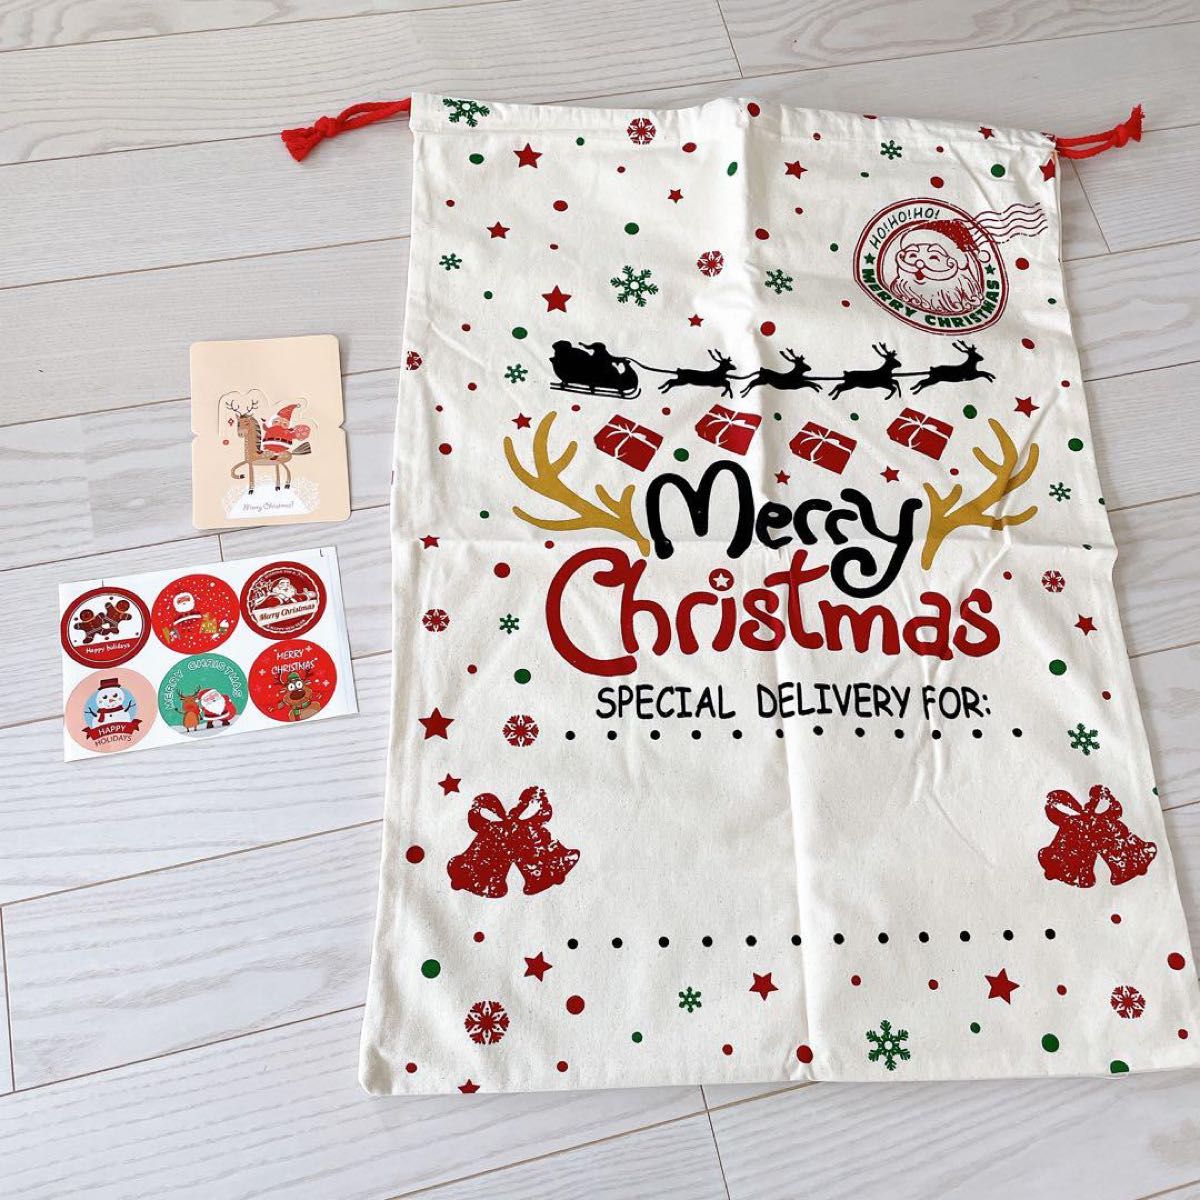 クリスマス ラッピング袋 特大 クリスマスプレゼント ギフトバッグ 巾着袋 50×70cm メッセージカードとシール付き ワクワク